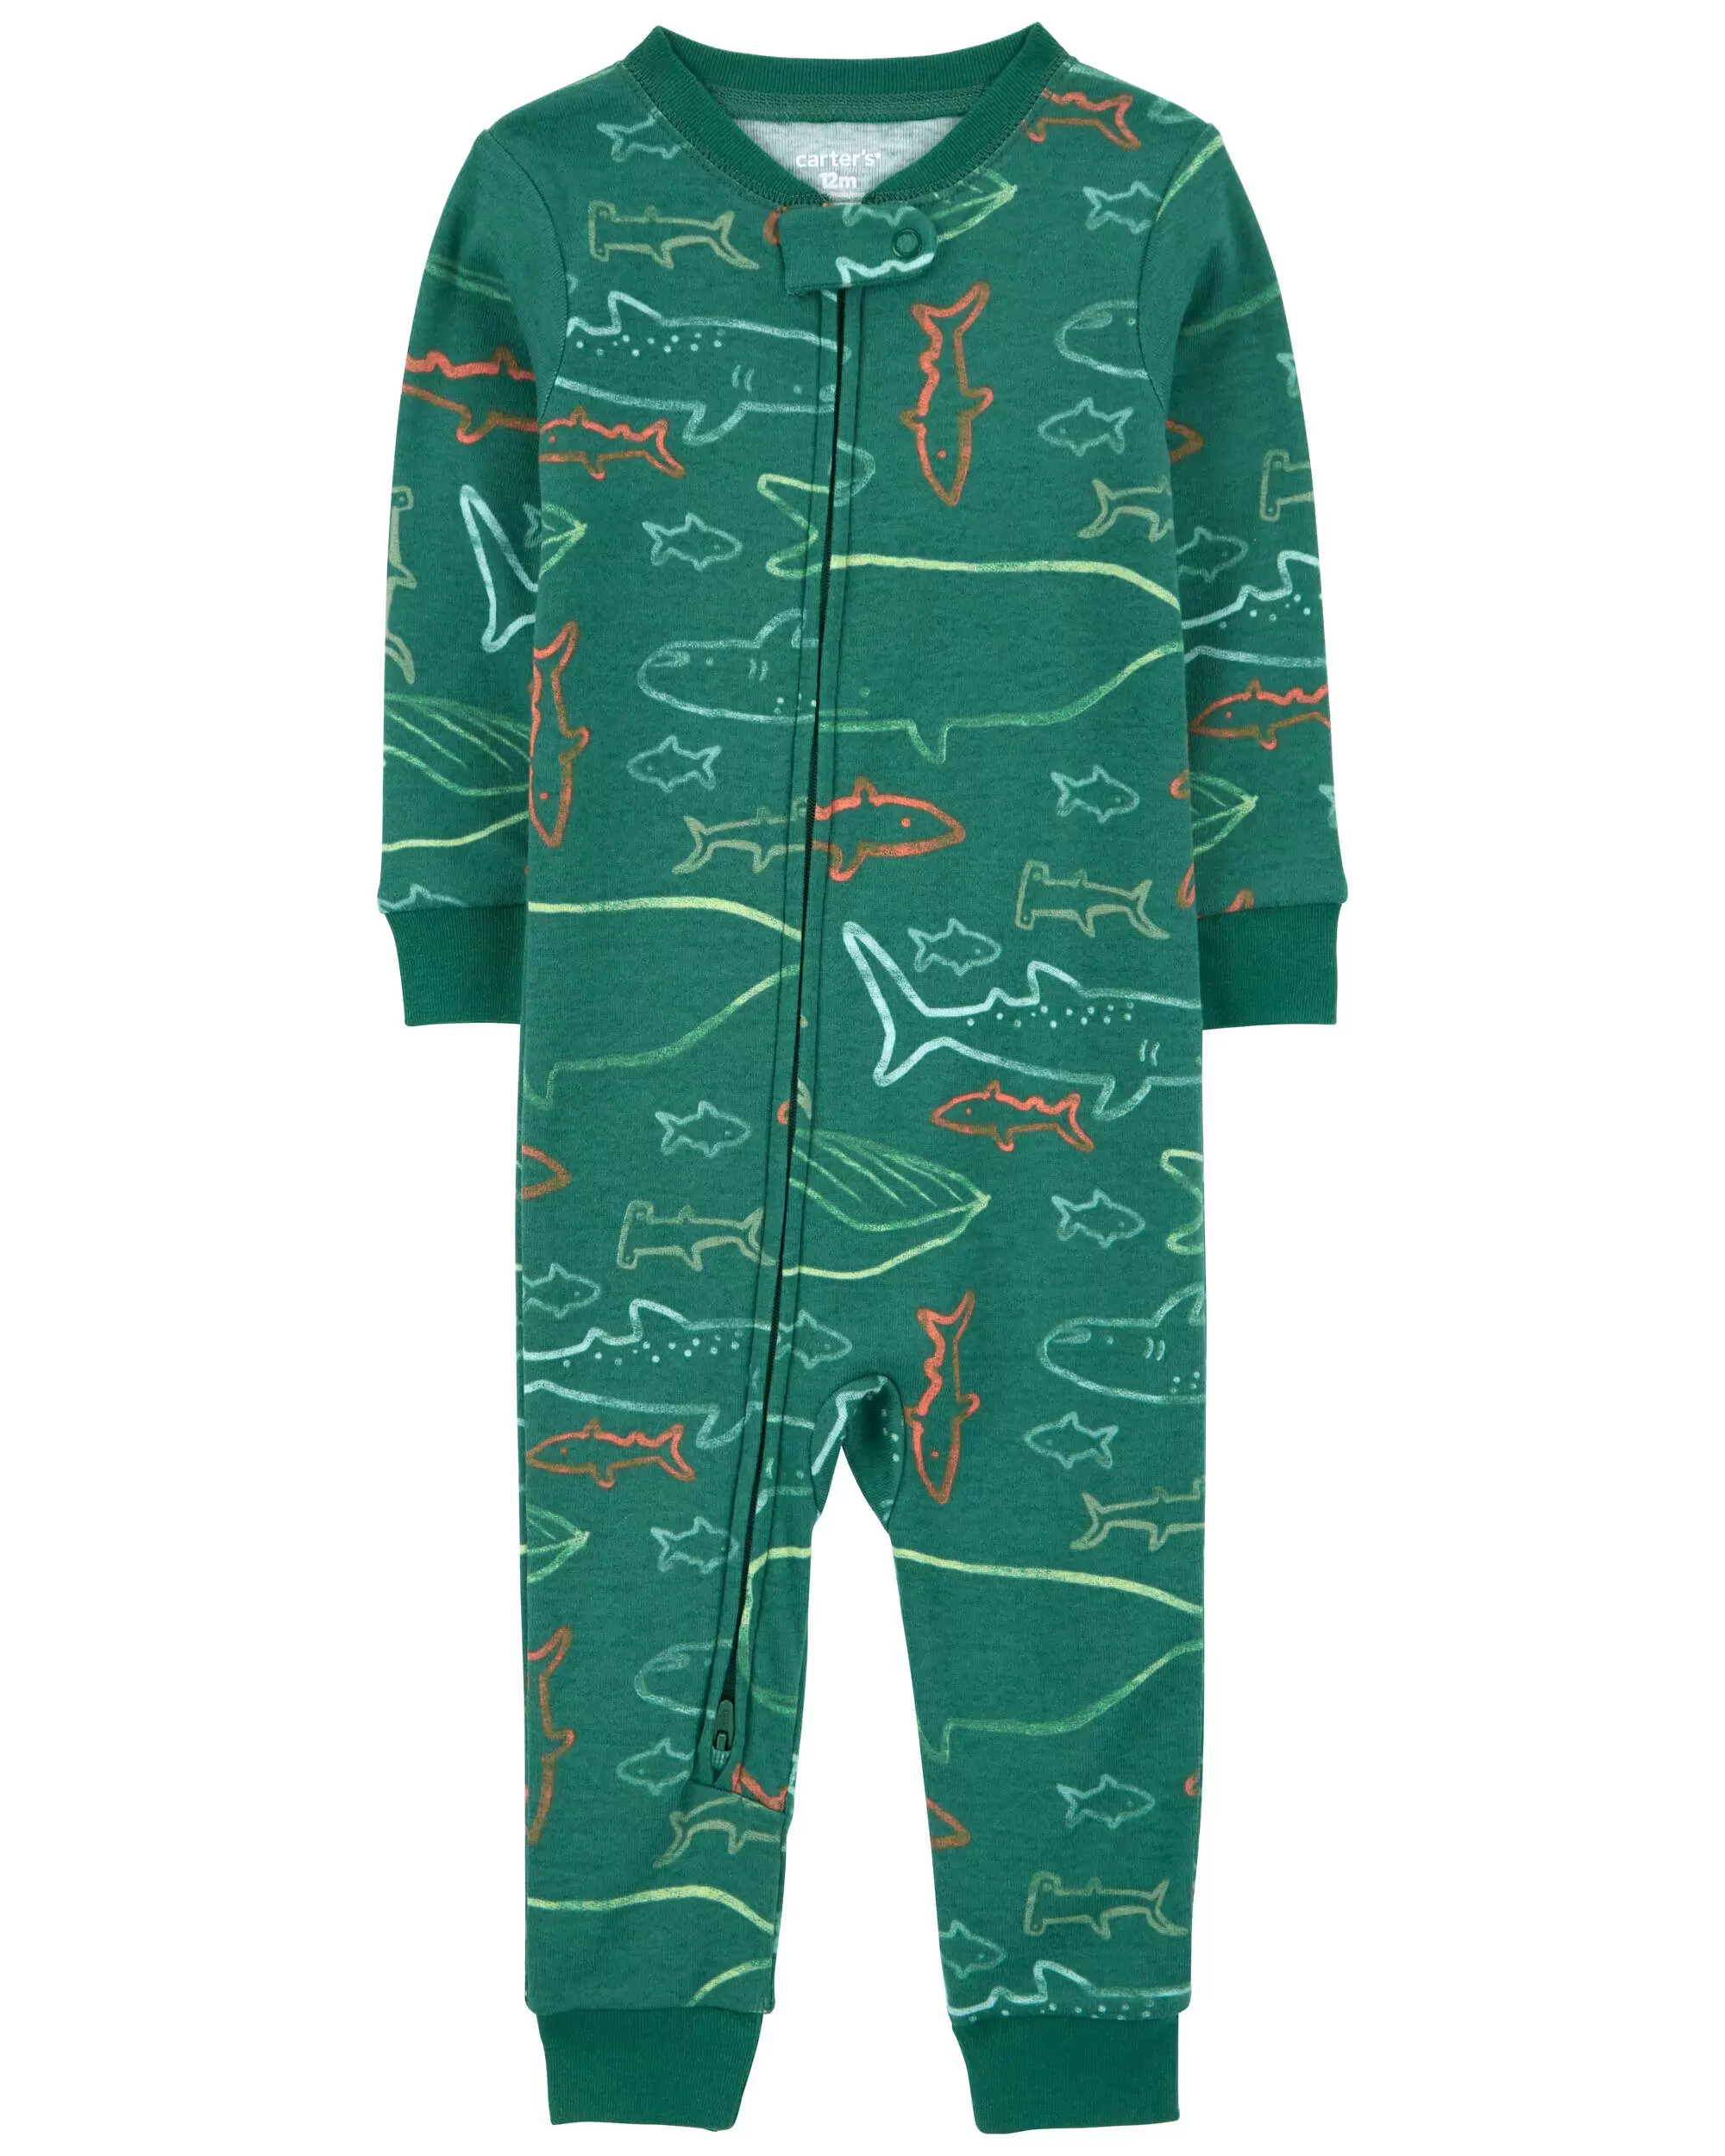 Цельная пижама без ног из 100 % плотного хлопка с изображением акулы для малышей Carter's